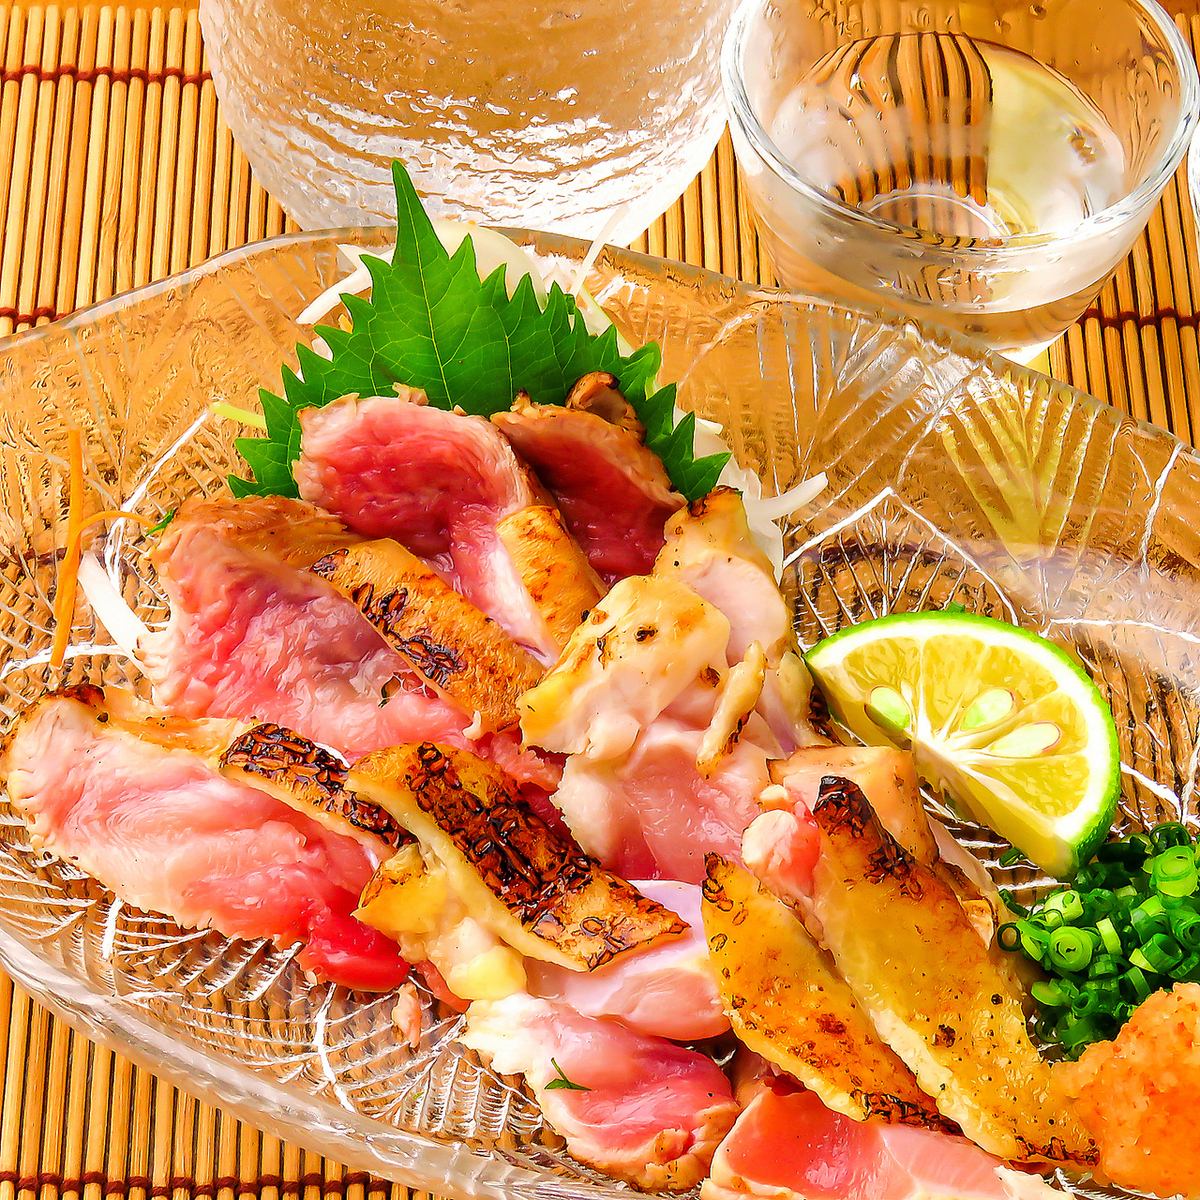 著名的“tataki土雞”和“炭火烤雞肉串”的肉質和風味都非常出色。